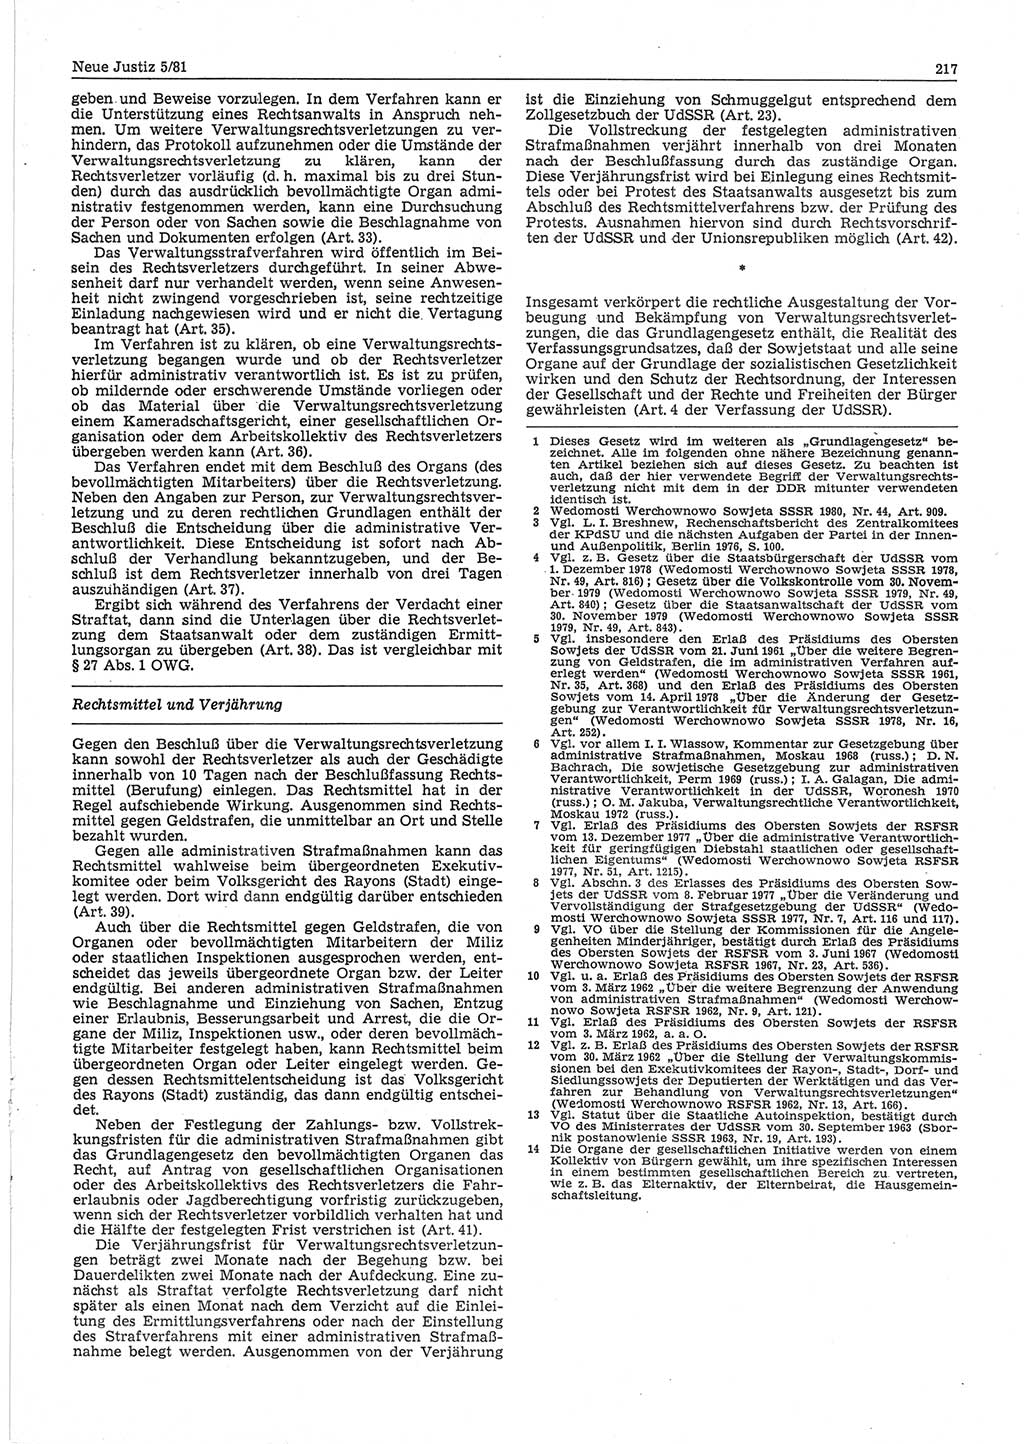 Neue Justiz (NJ), Zeitschrift für sozialistisches Recht und Gesetzlichkeit [Deutsche Demokratische Republik (DDR)], 35. Jahrgang 1981, Seite 217 (NJ DDR 1981, S. 217)